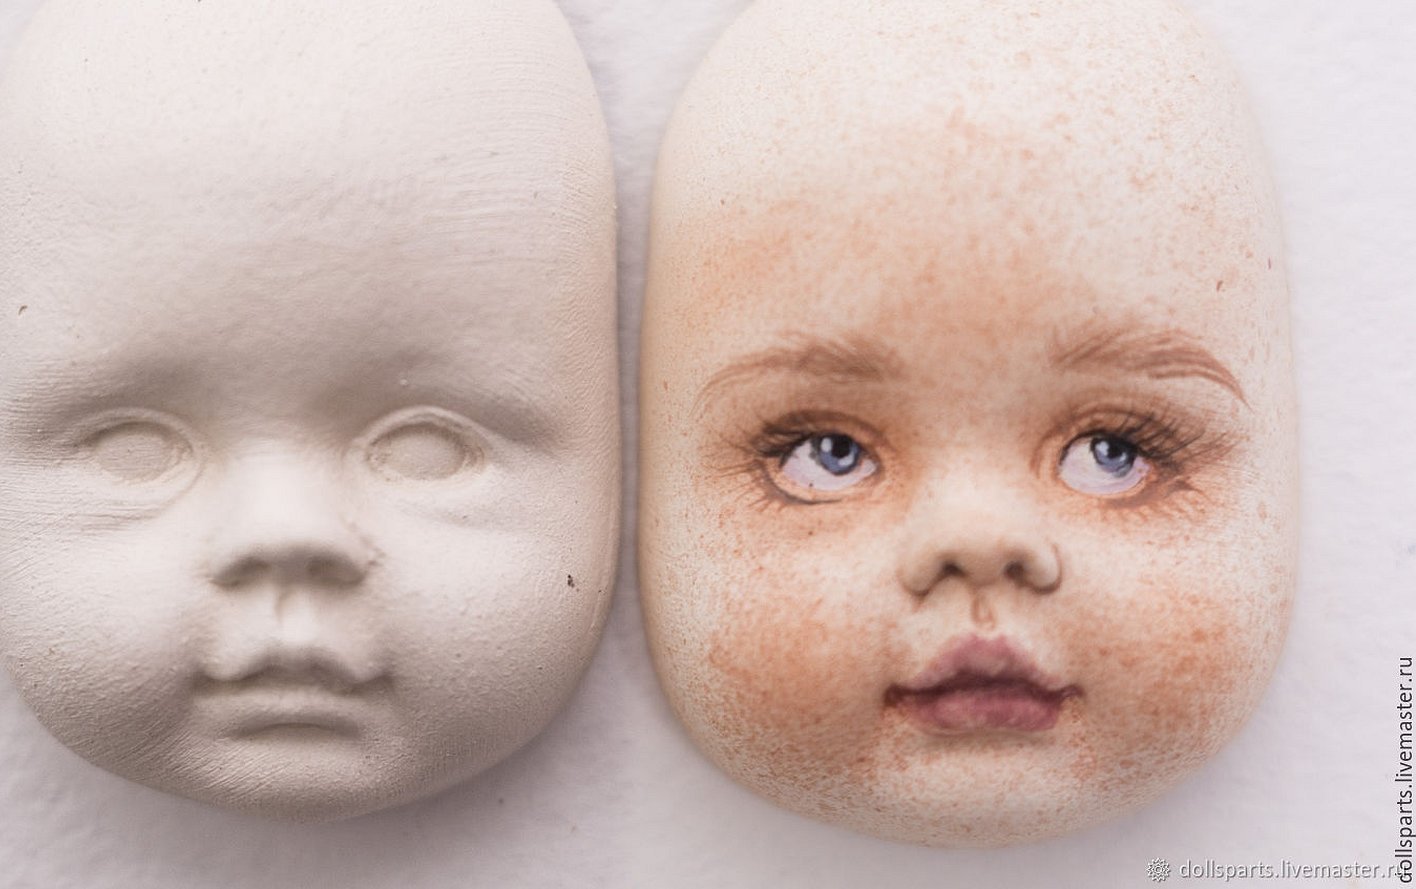 Лица кукол из полимерной лицо